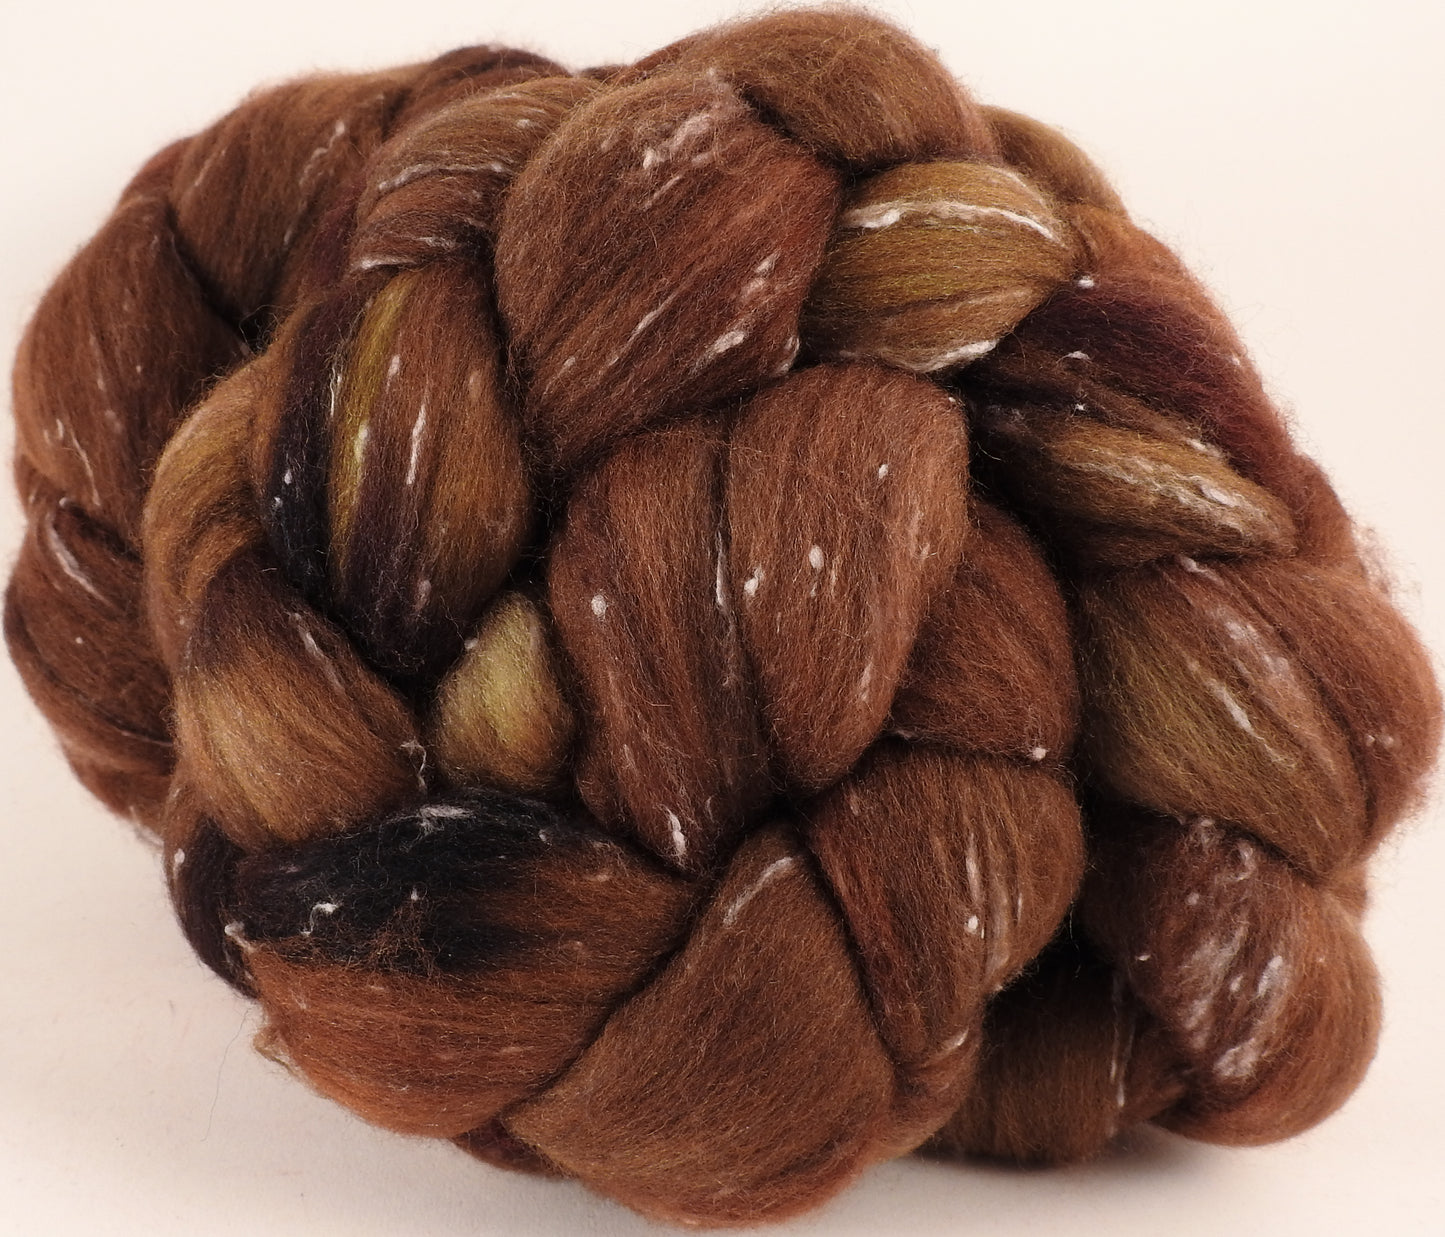 Batt in a Braid #42- Acorn -(5.3 oz)  Polwarth/ Tweed Blend / Peduncle&Tussah Silk( 50/25/25) - Inglenook Fibers